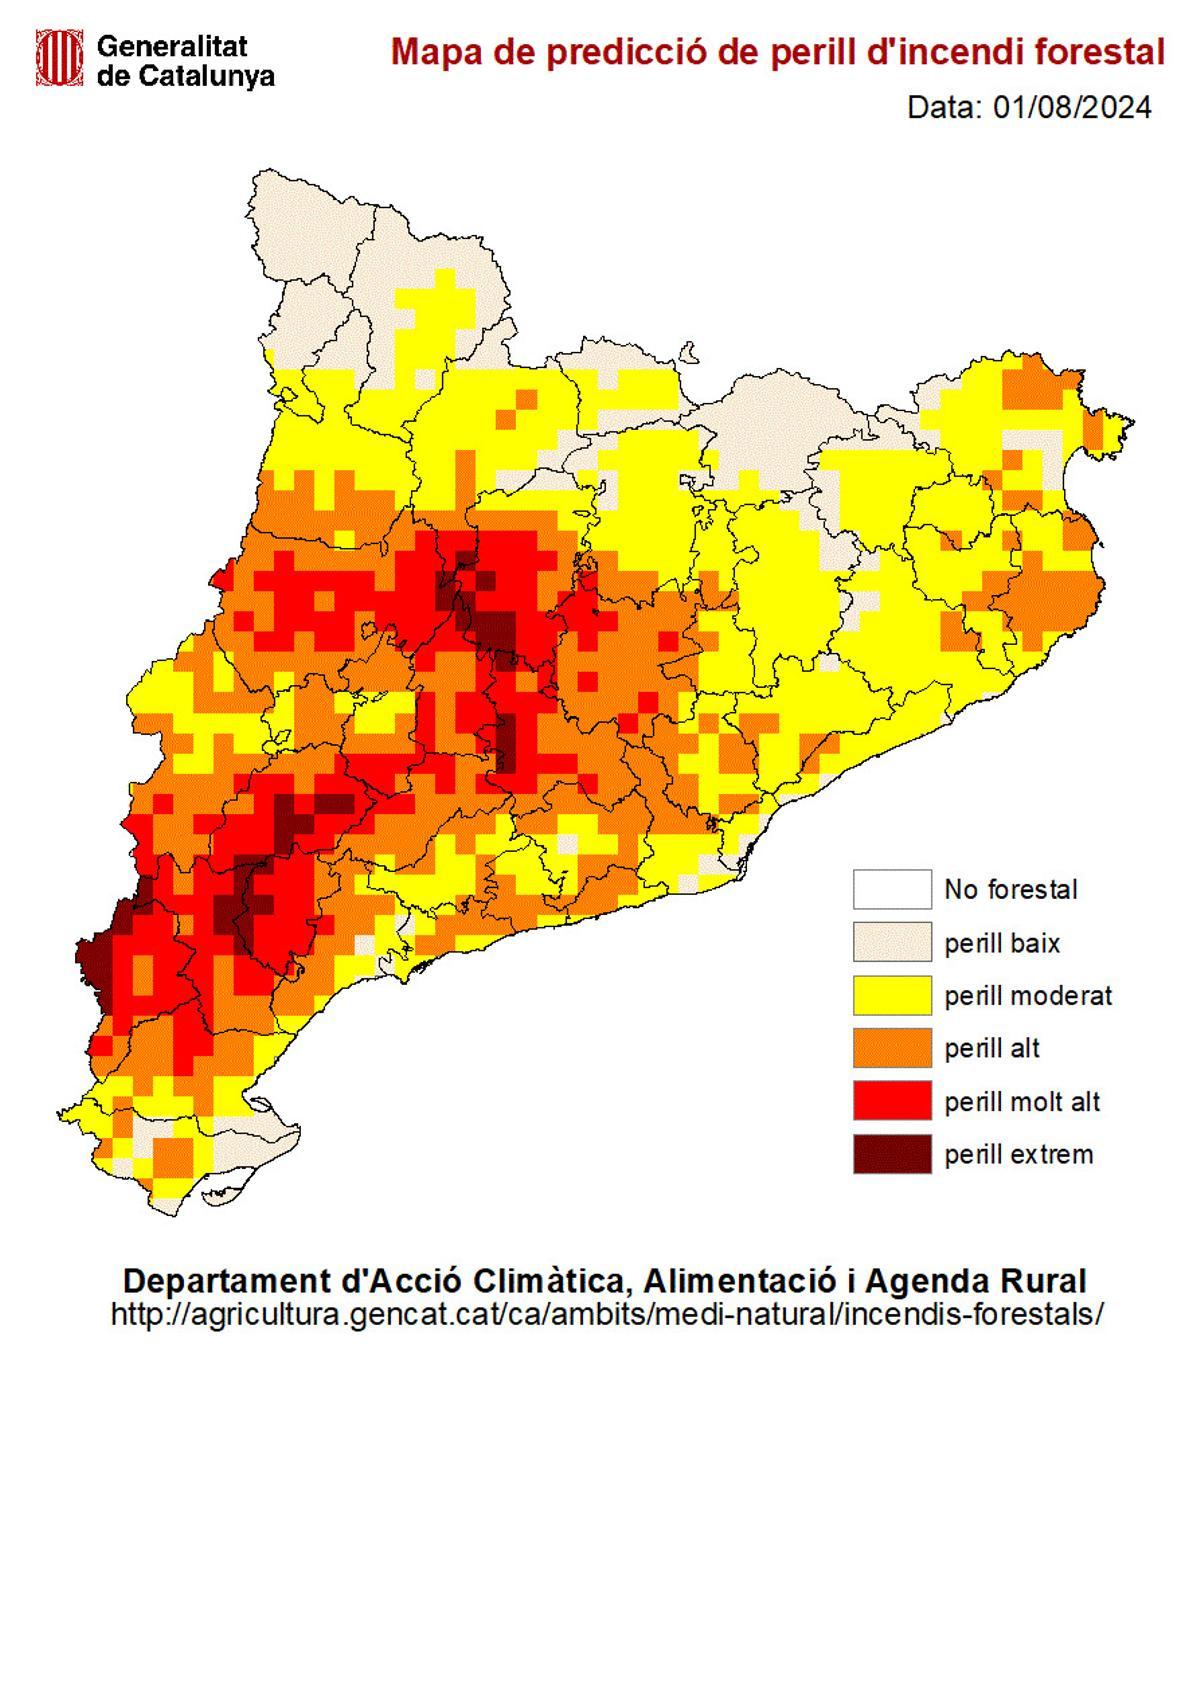 Mapa de predicción de peligro de incendio forestal en Catalunya